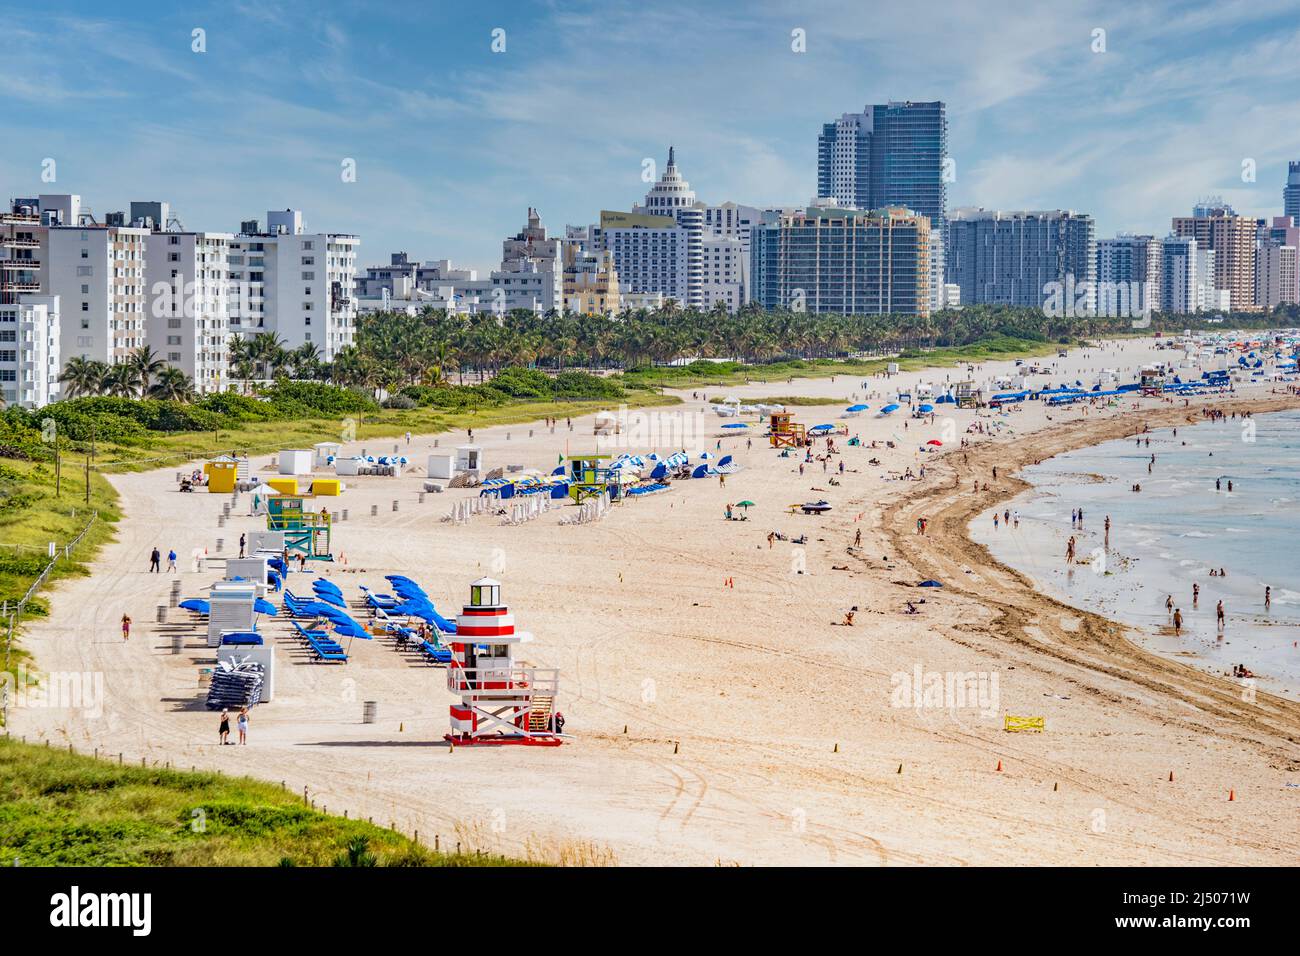 Der Strand am South Pointe Park in South Beach mit der Skyline von Miami Beach vom Deck eines Kreuzfahrtschiffs aus gesehen. Stockfoto